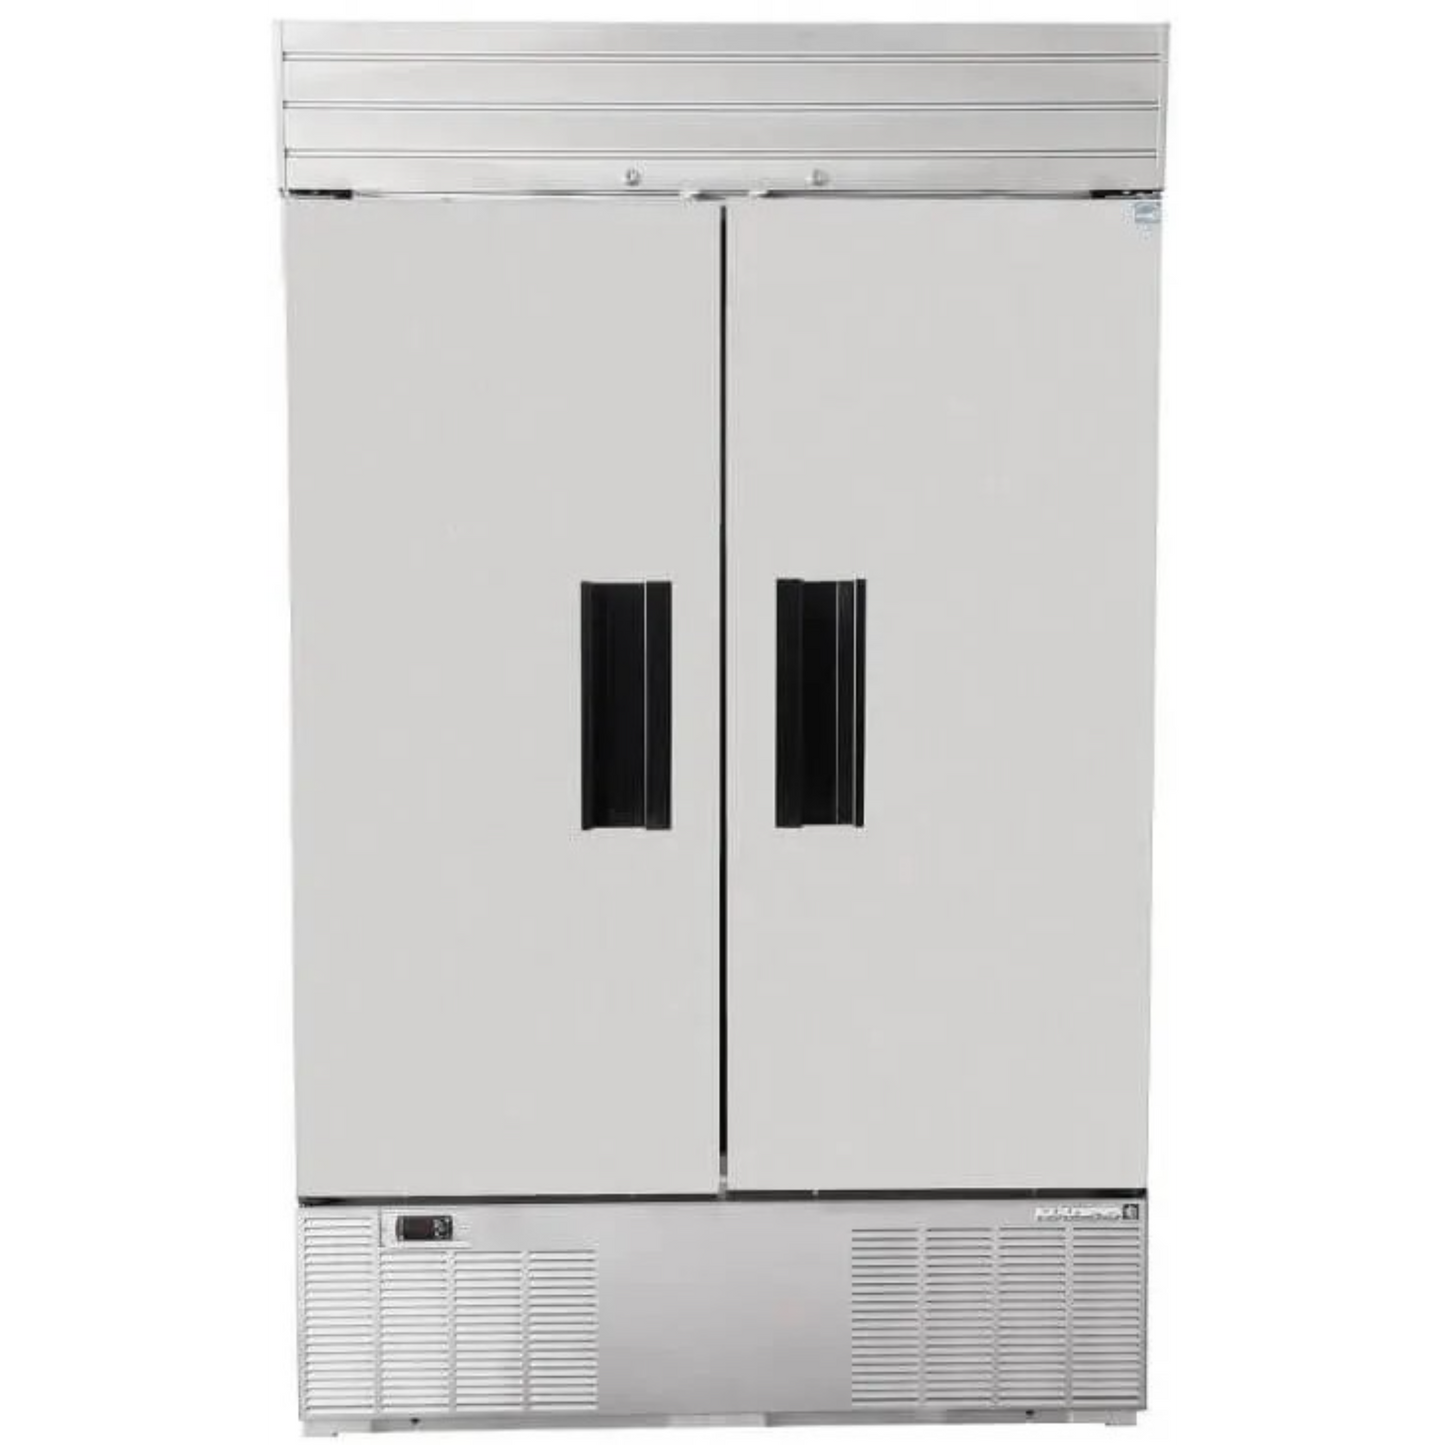 HABCO SE46HCSX 47.5" Double Solid Swing Door Refrigerator SX Model